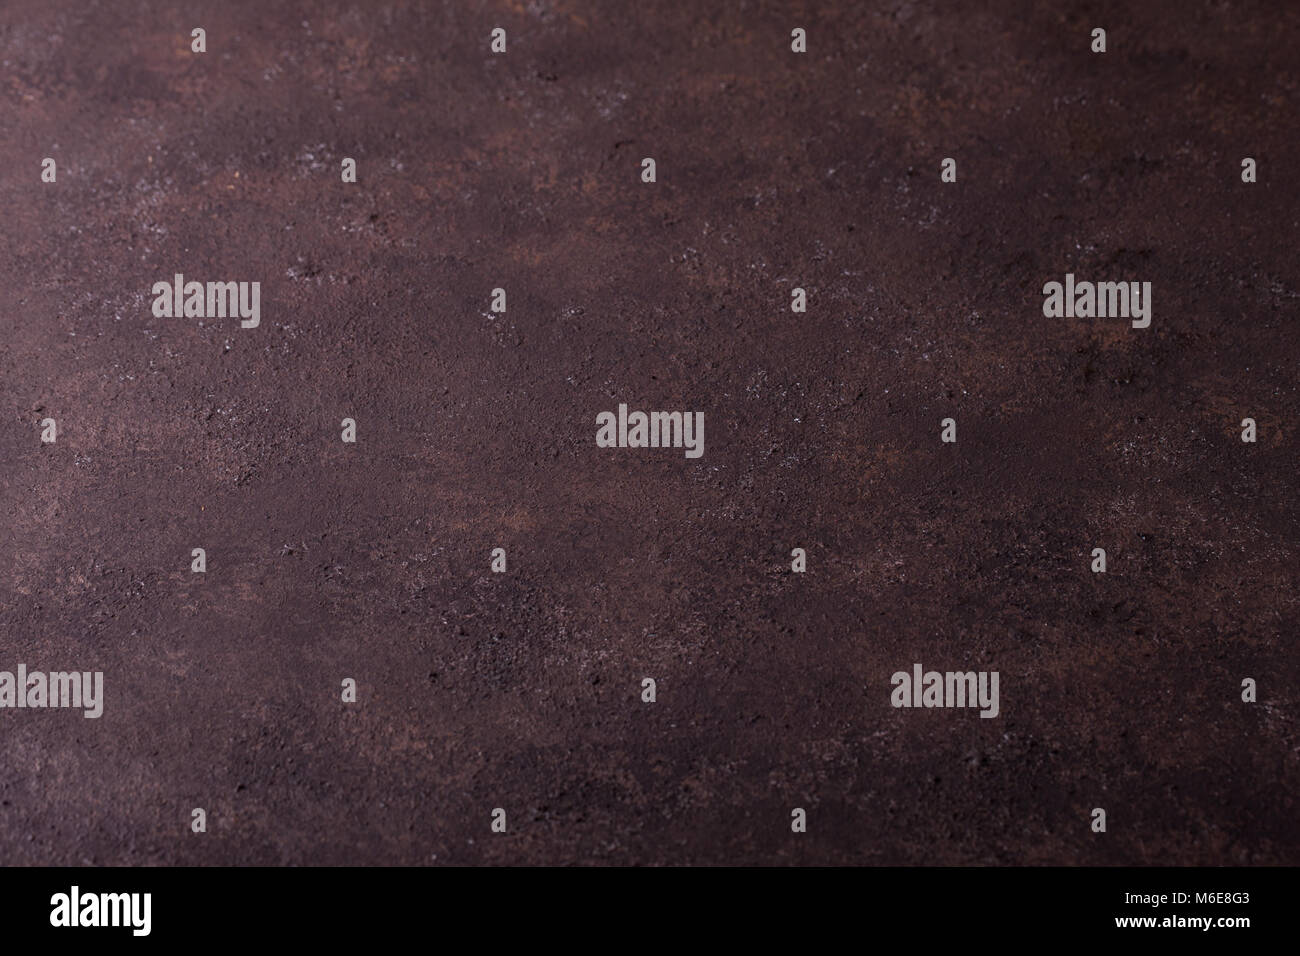 La texture de surface de fond, boutons imitation béton poreux de fer rouillé. mur plat de couleur brun foncé, les boutons, l'exemplaire de l'espace. La texture de surface rugueuse Banque D'Images